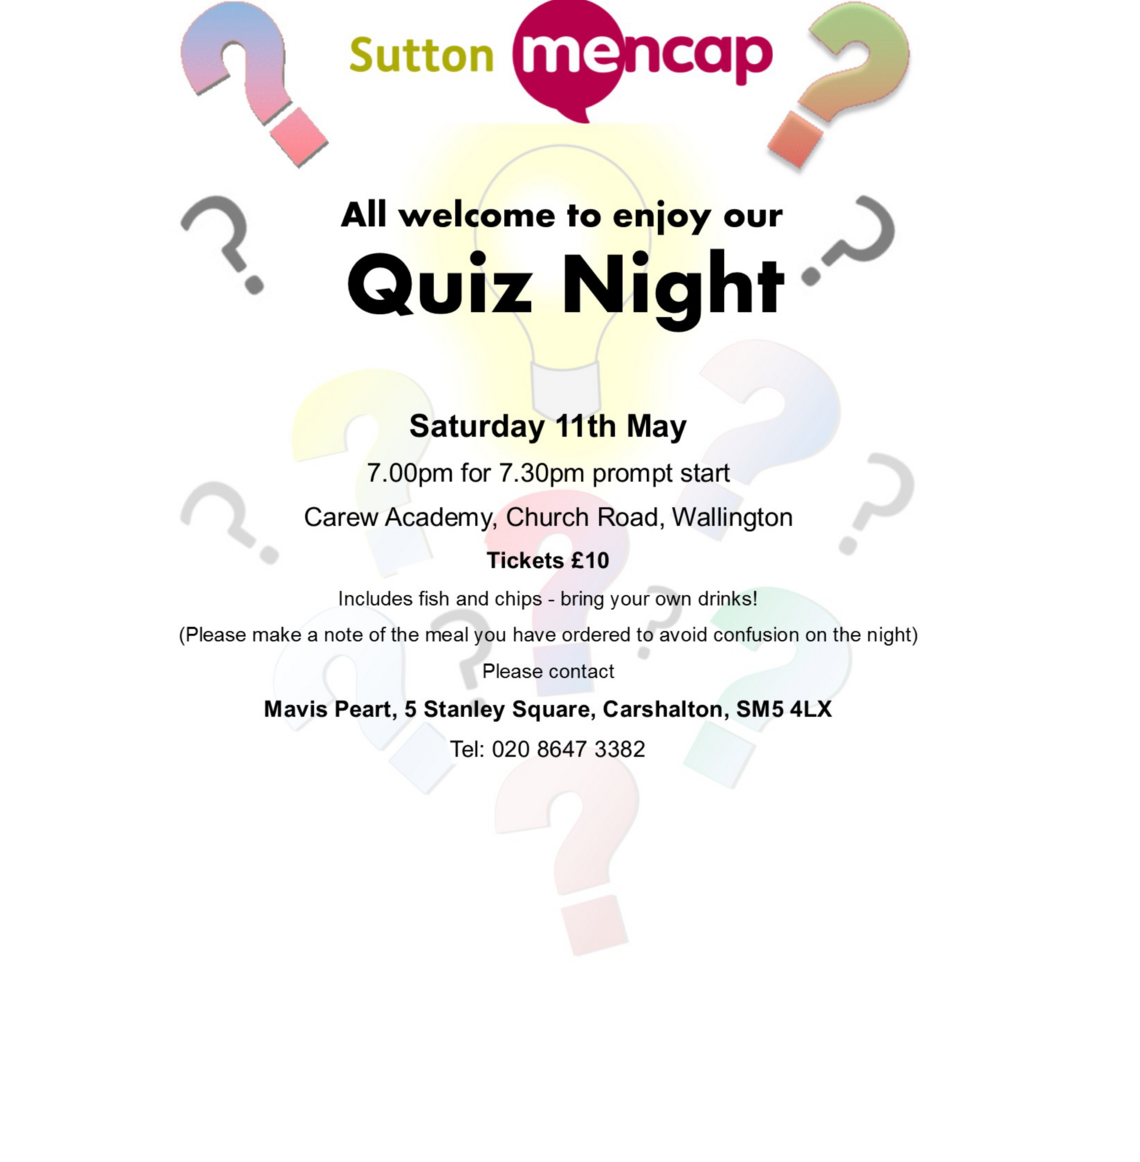 
Sutton Mencap’s ever popular quiz night! Poster
